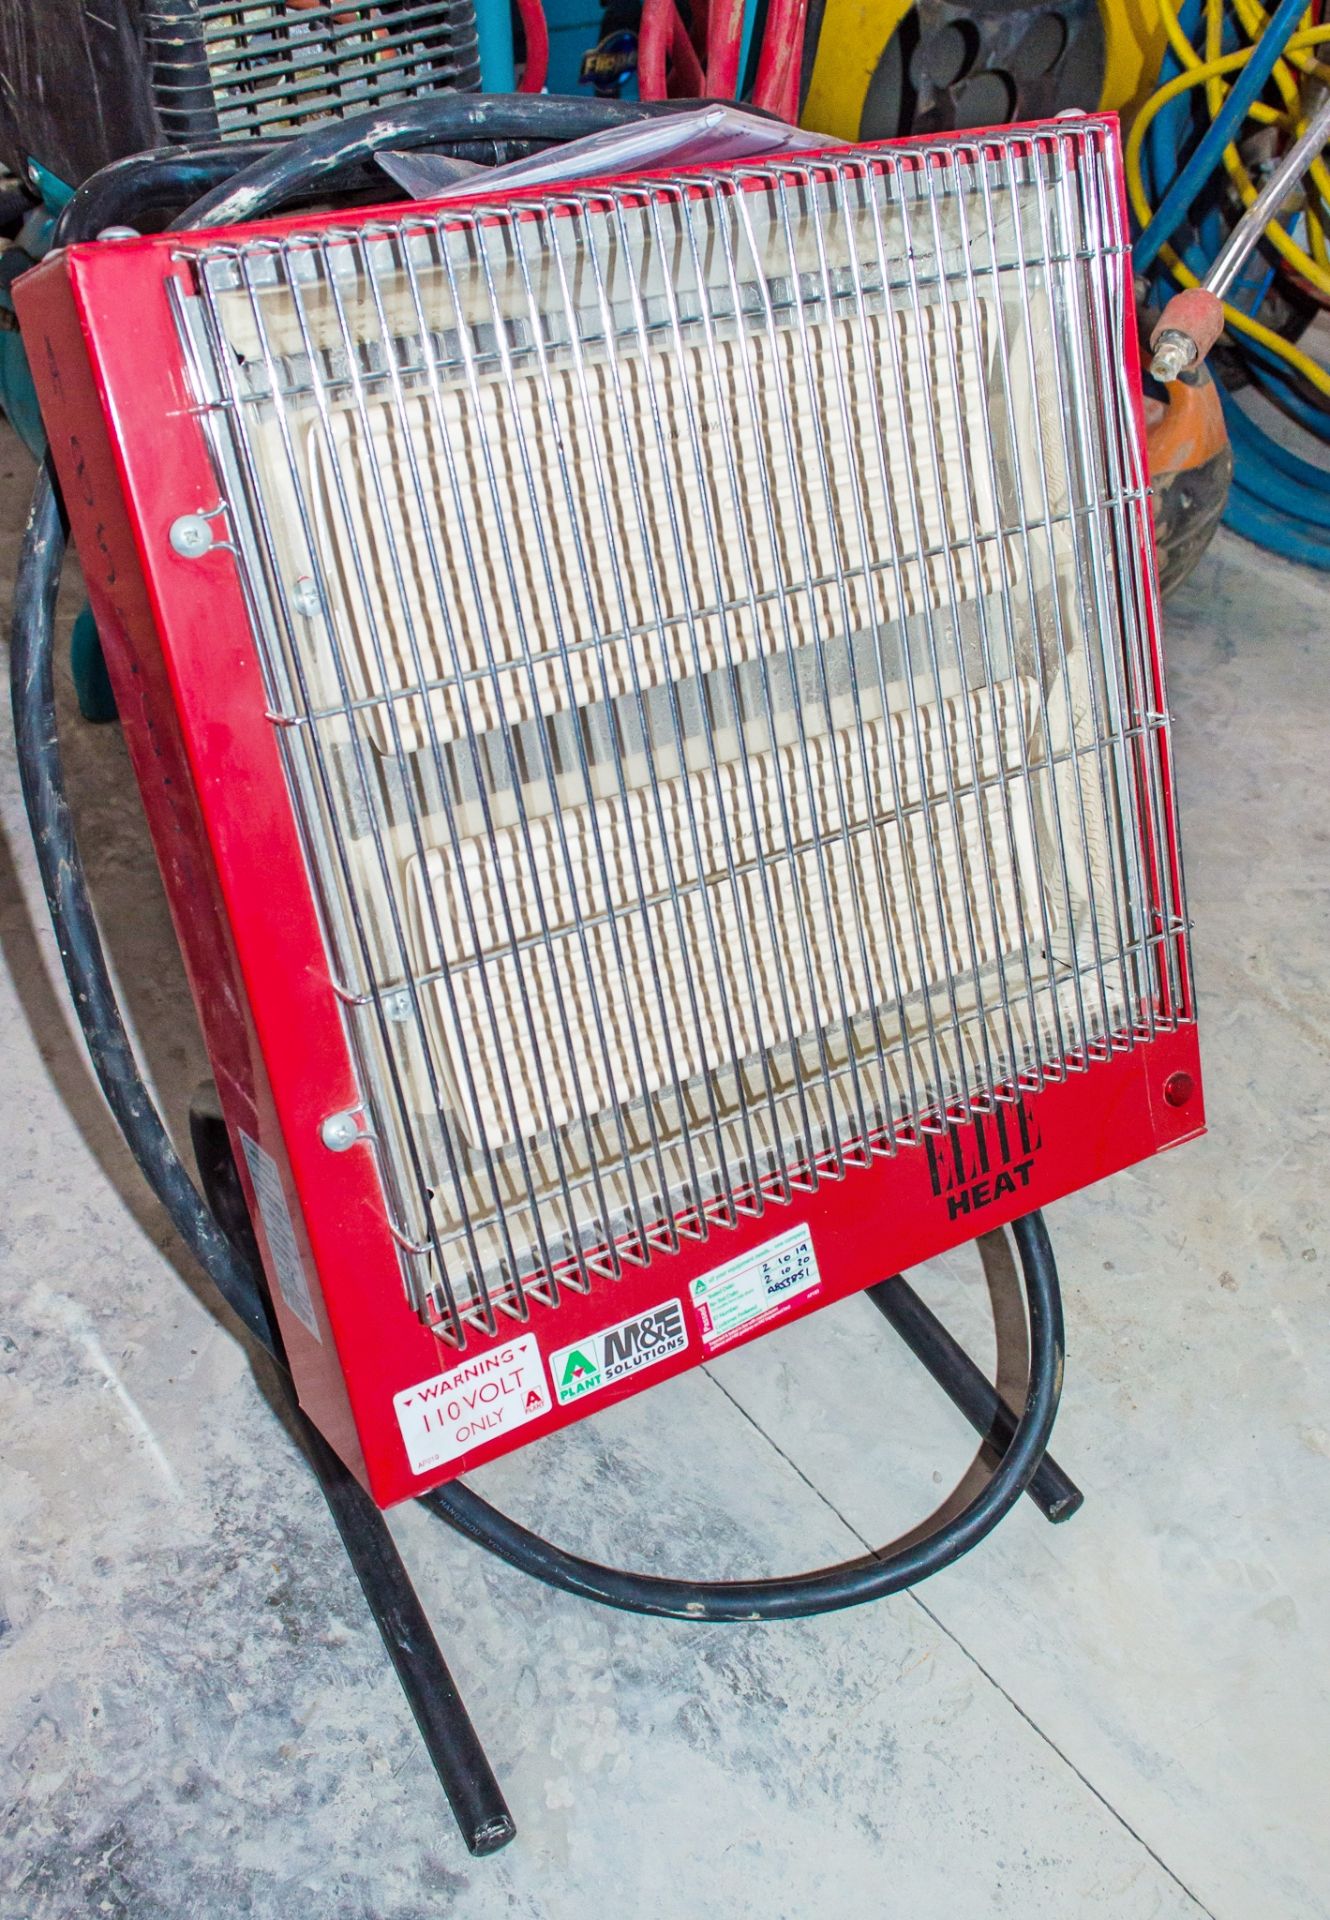 Elite 110v infra red heater A853851